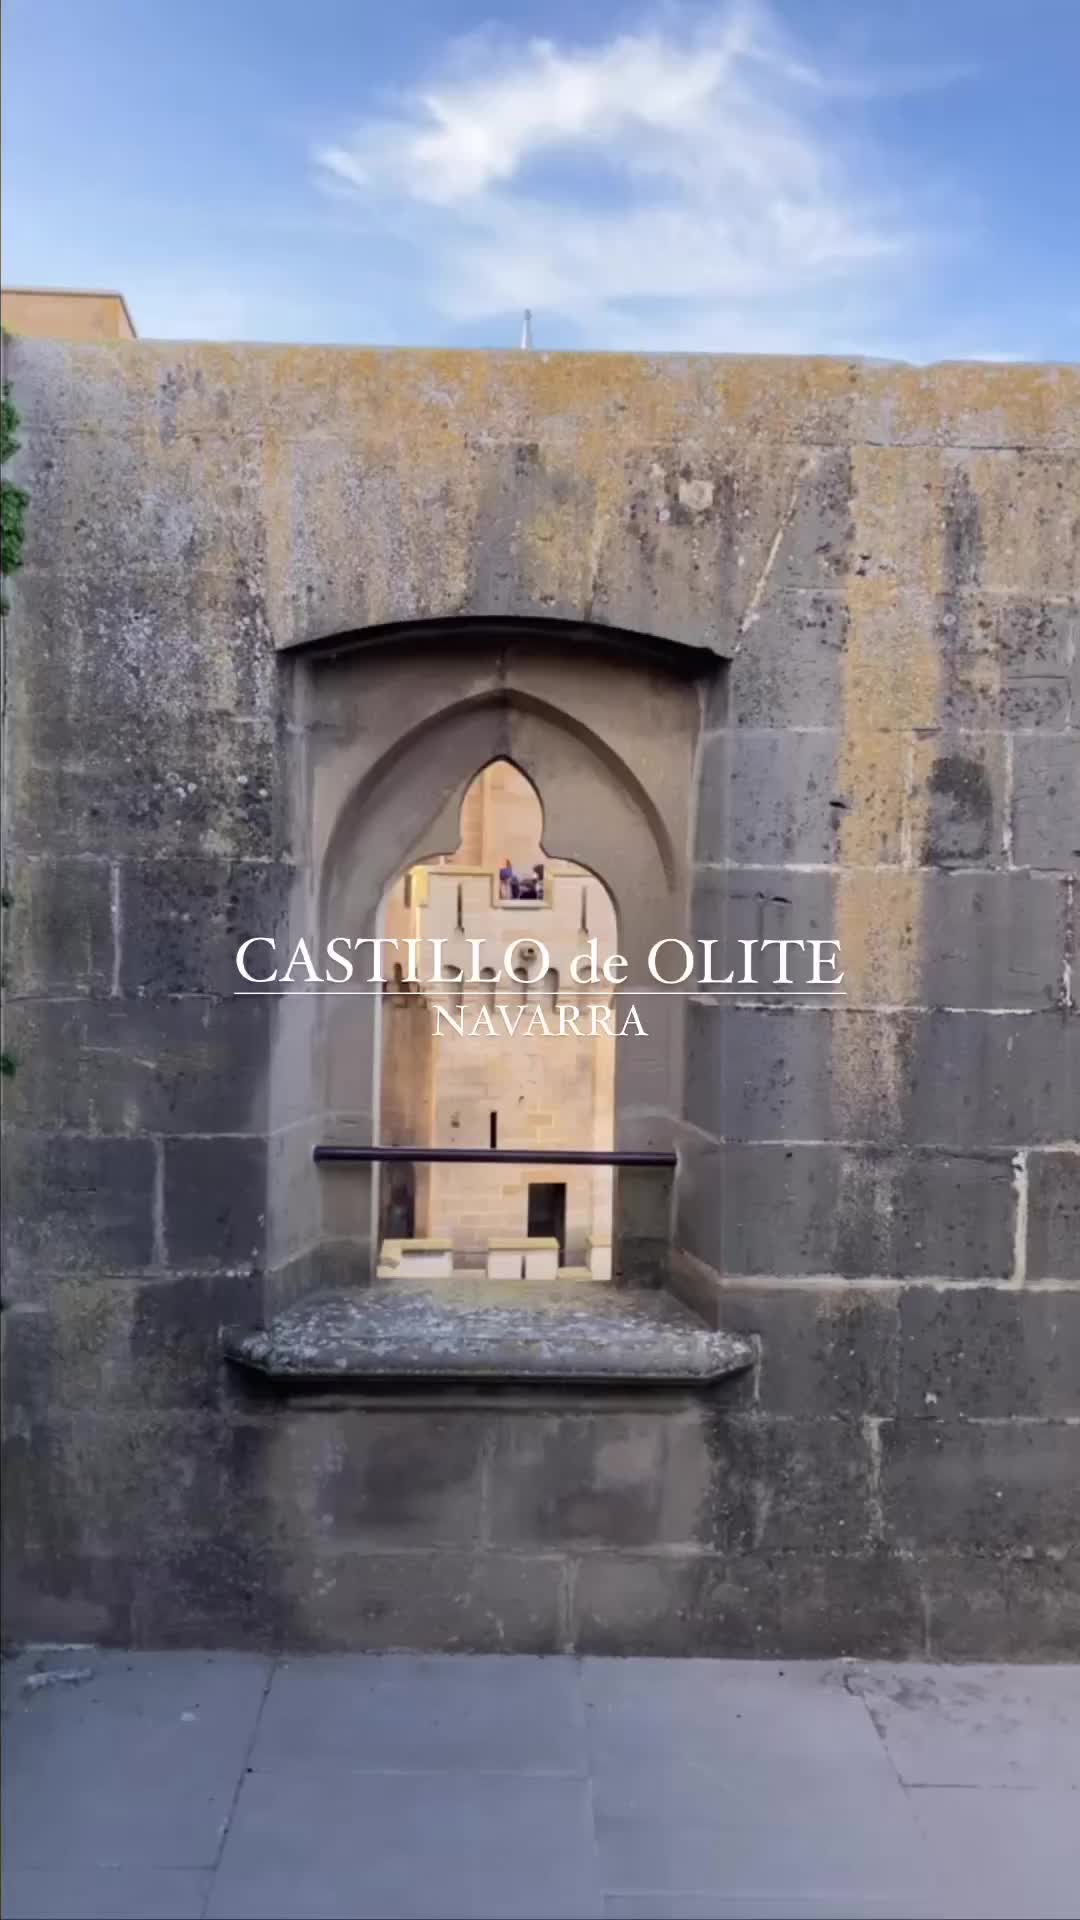 Discover the Fairy Tale Castillo de Olite in Navarra